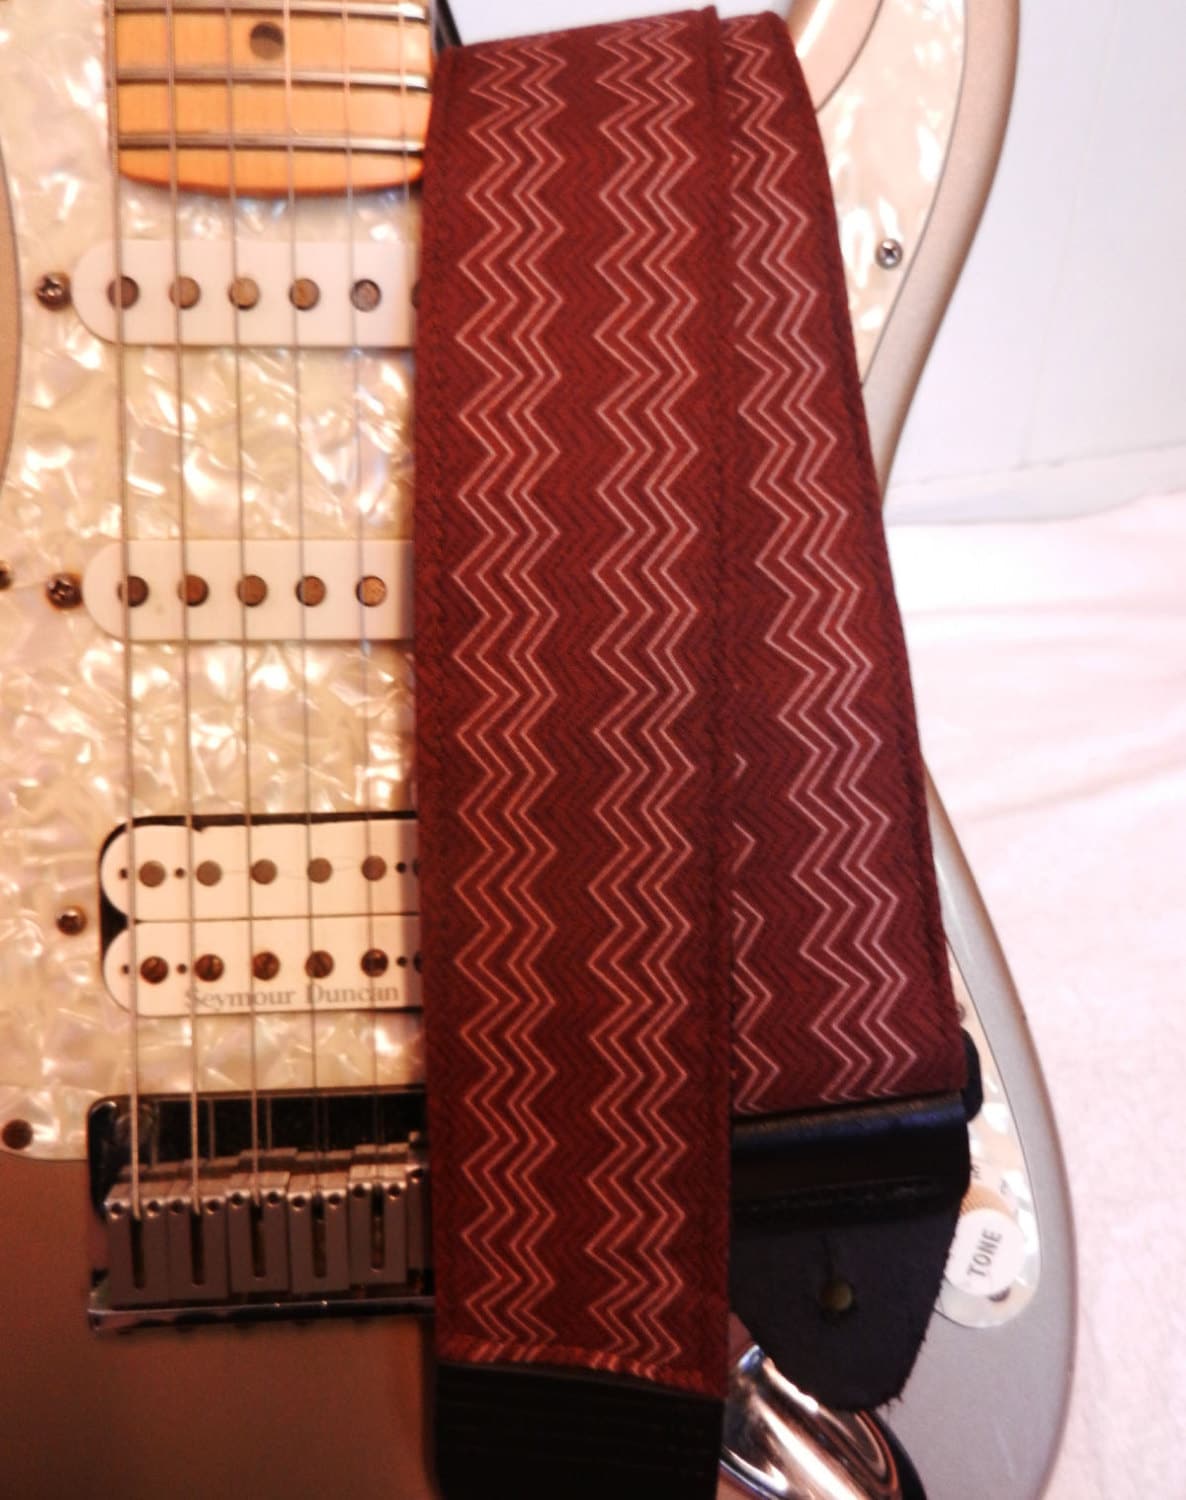 Chevron Embroidered Guitar Strap